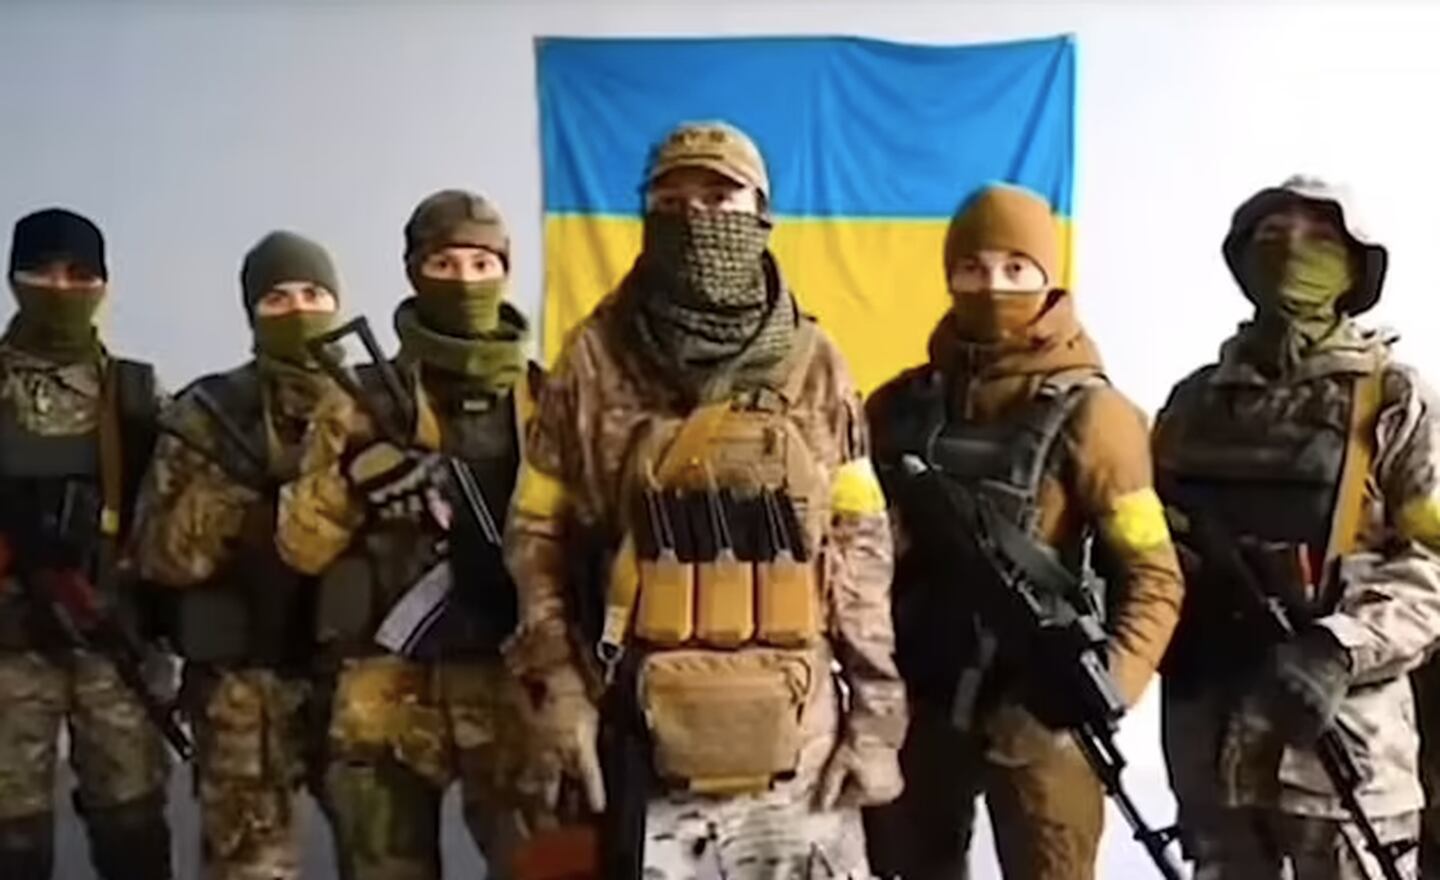 这六名女性在 TikTok 上发布了一段挑衅的视频，誓言要杀死敌人并为每个乌克兰儿童的死报仇。 照片/TikTok